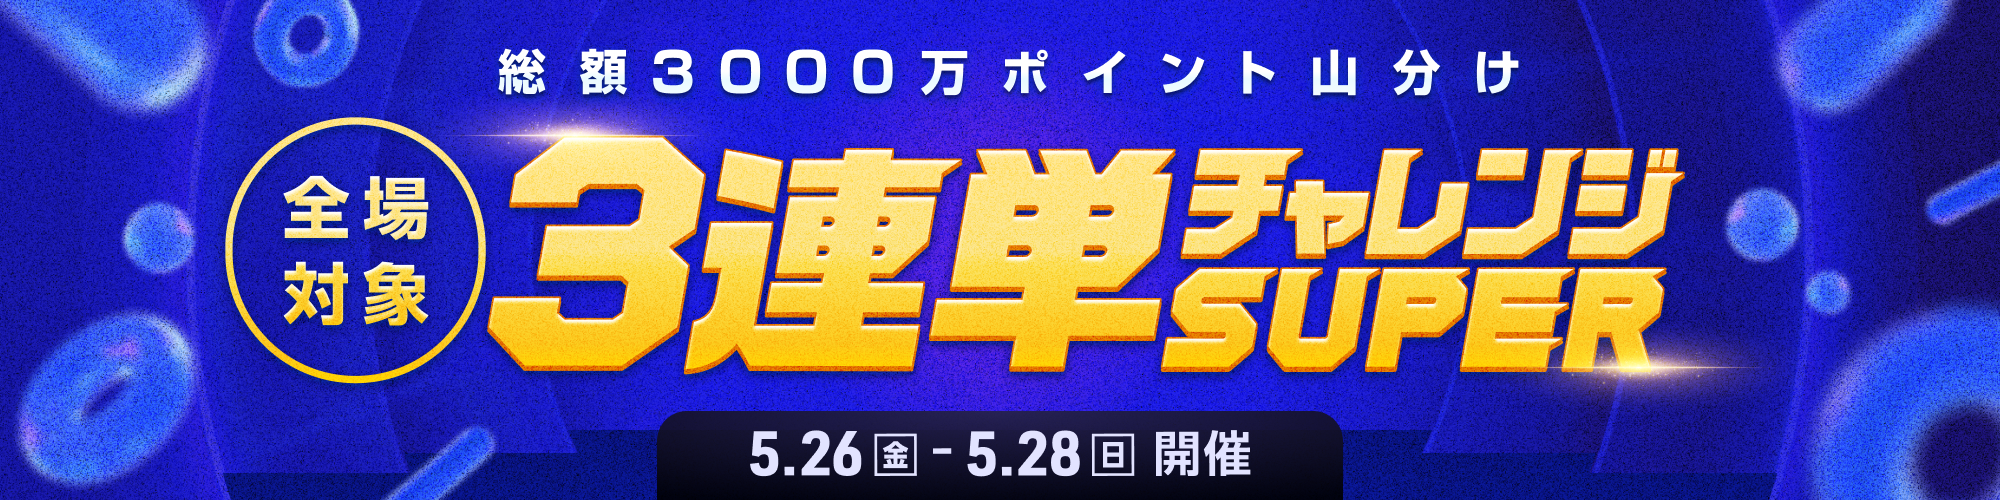 【総額3,000万山分け】全場対象3連単チャレンジSUPER